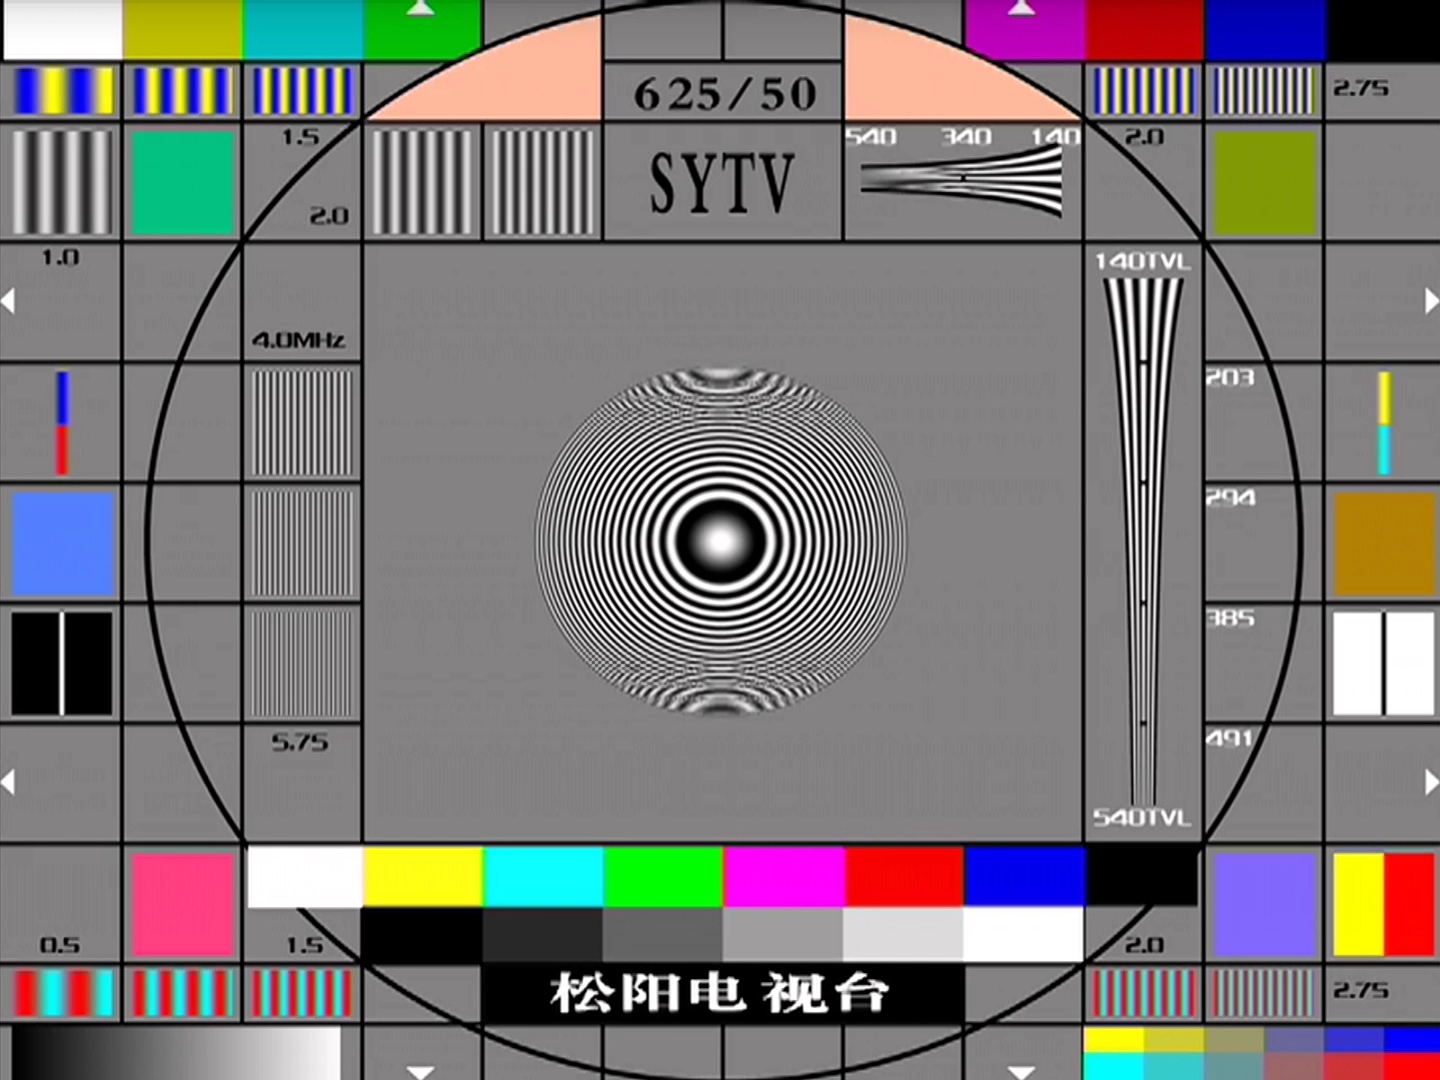 黑龙江电视台测试卡图片